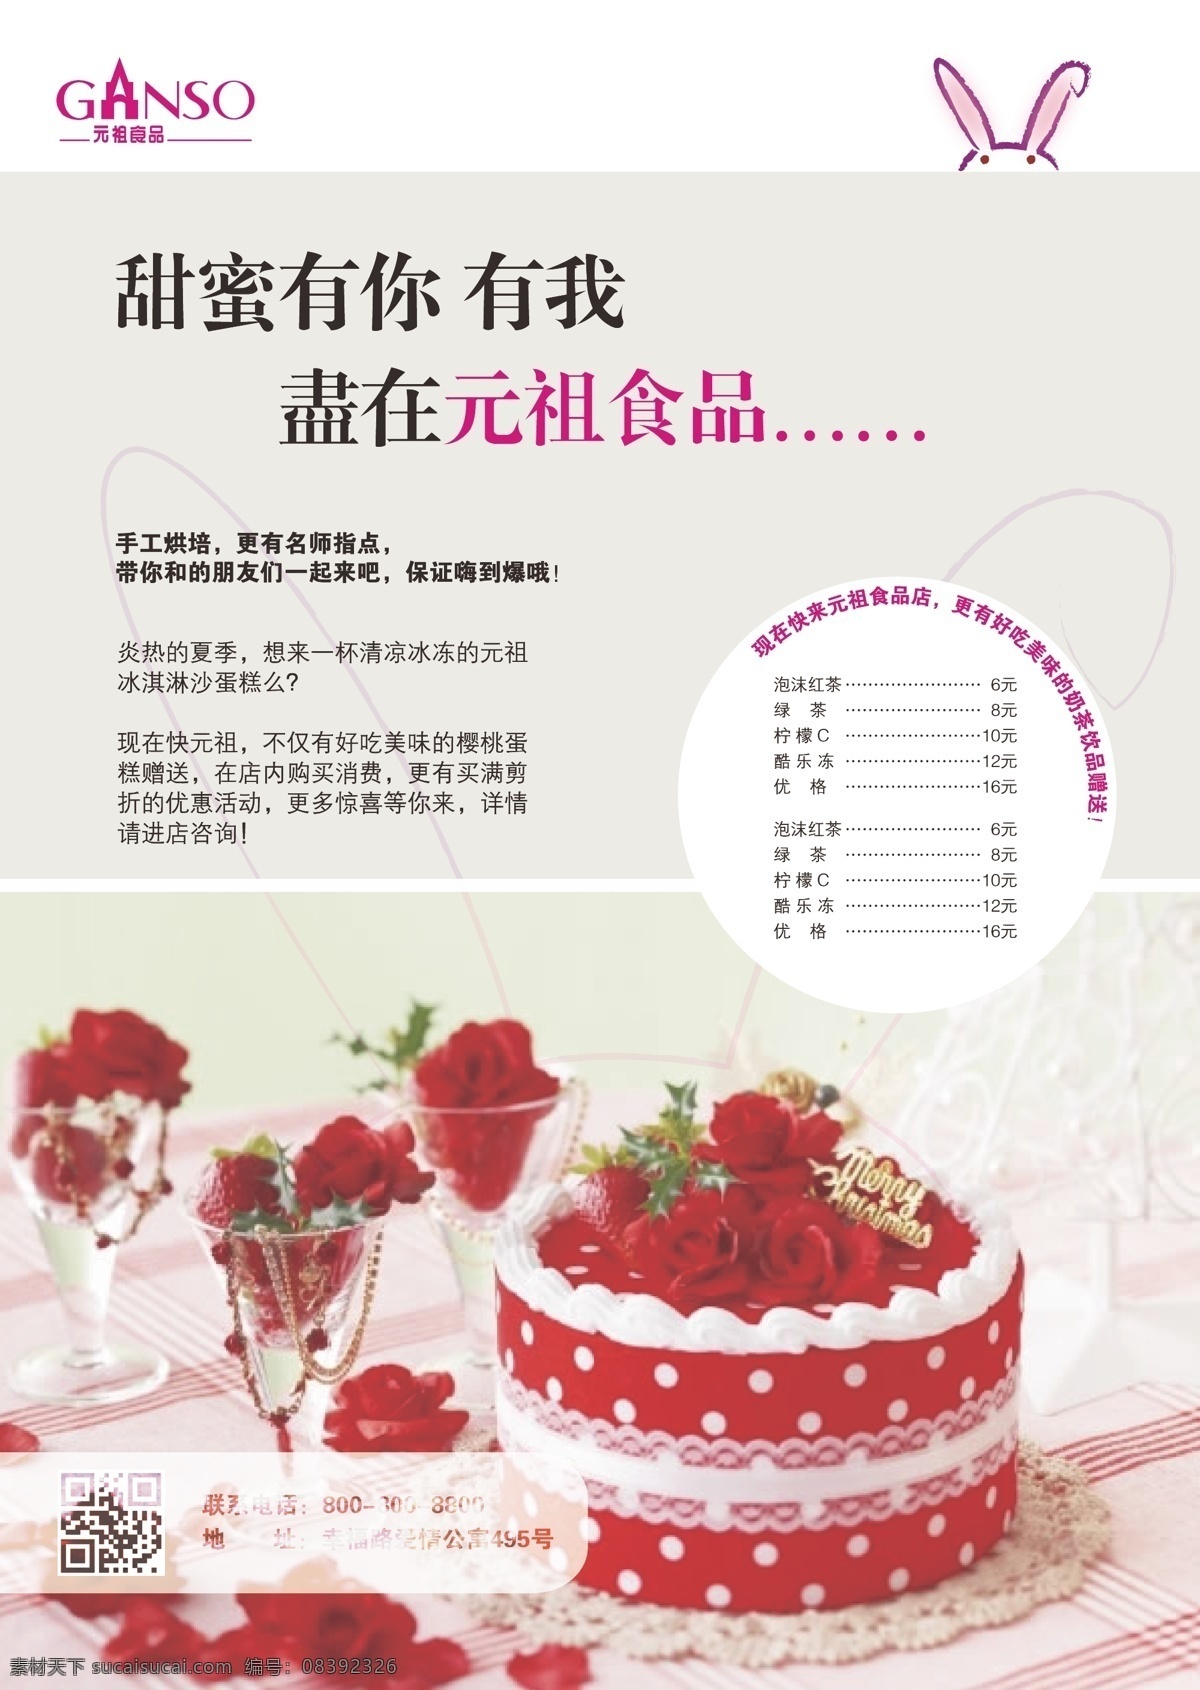 元祖 蛋糕 宣传单 页 元祖logo 宣传单页